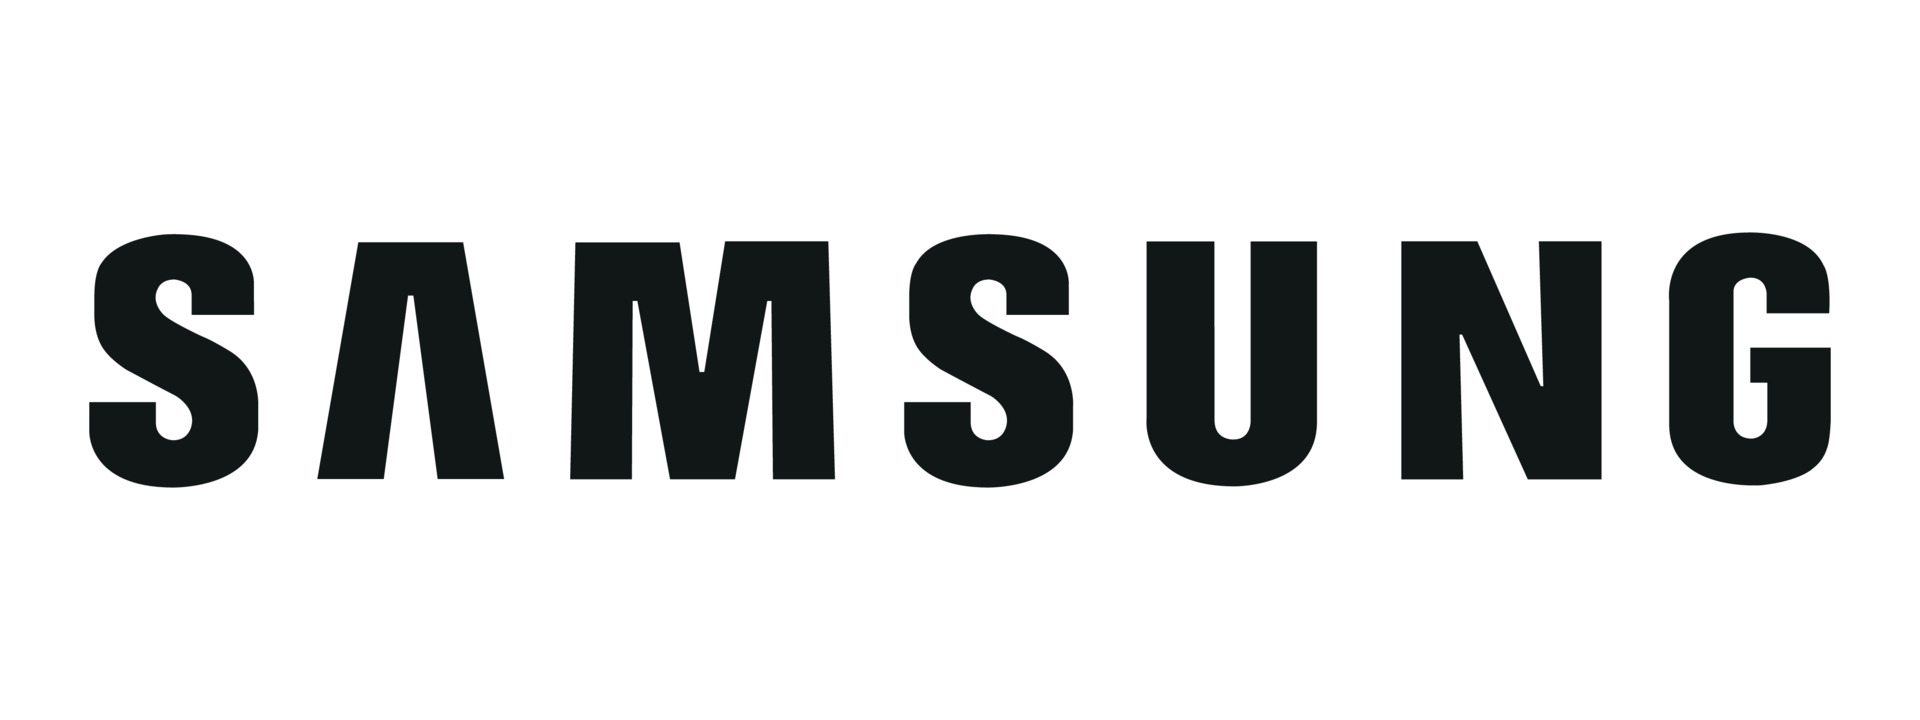 Samsung zaměstnancům zakázal používat konverzační AI (Zdroj: Samsung)